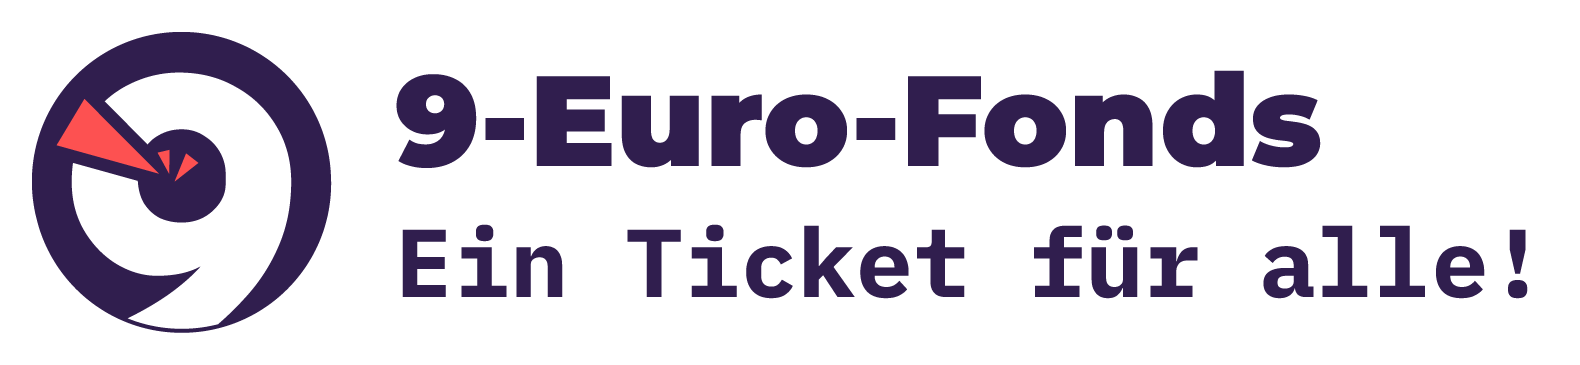 9 Euro Fonds - Ein Ticket für alle